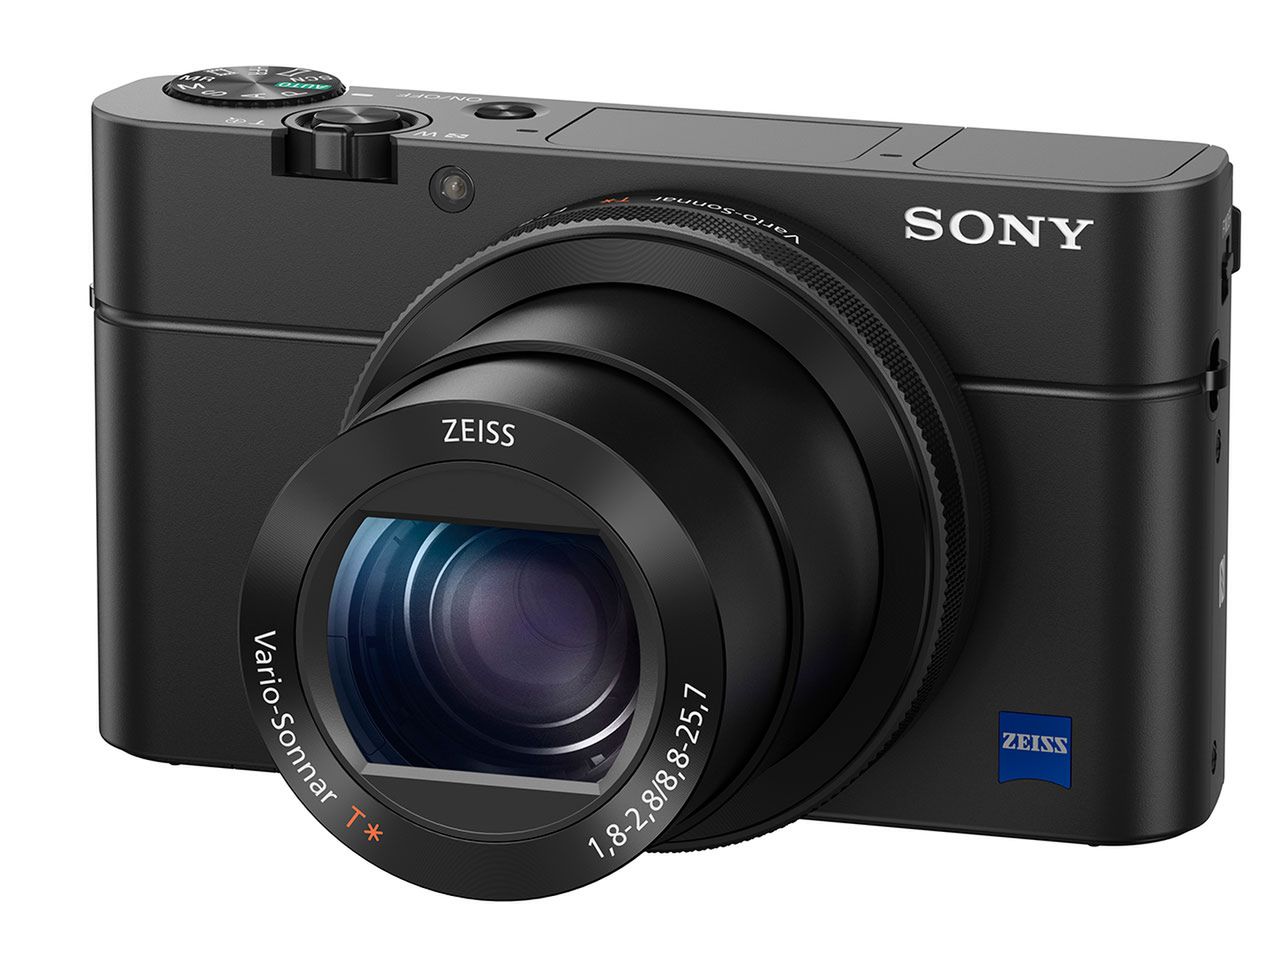 Sony RX100 IV - aż 16 kl./s i filmy 4K w kieszonkowej obudowie